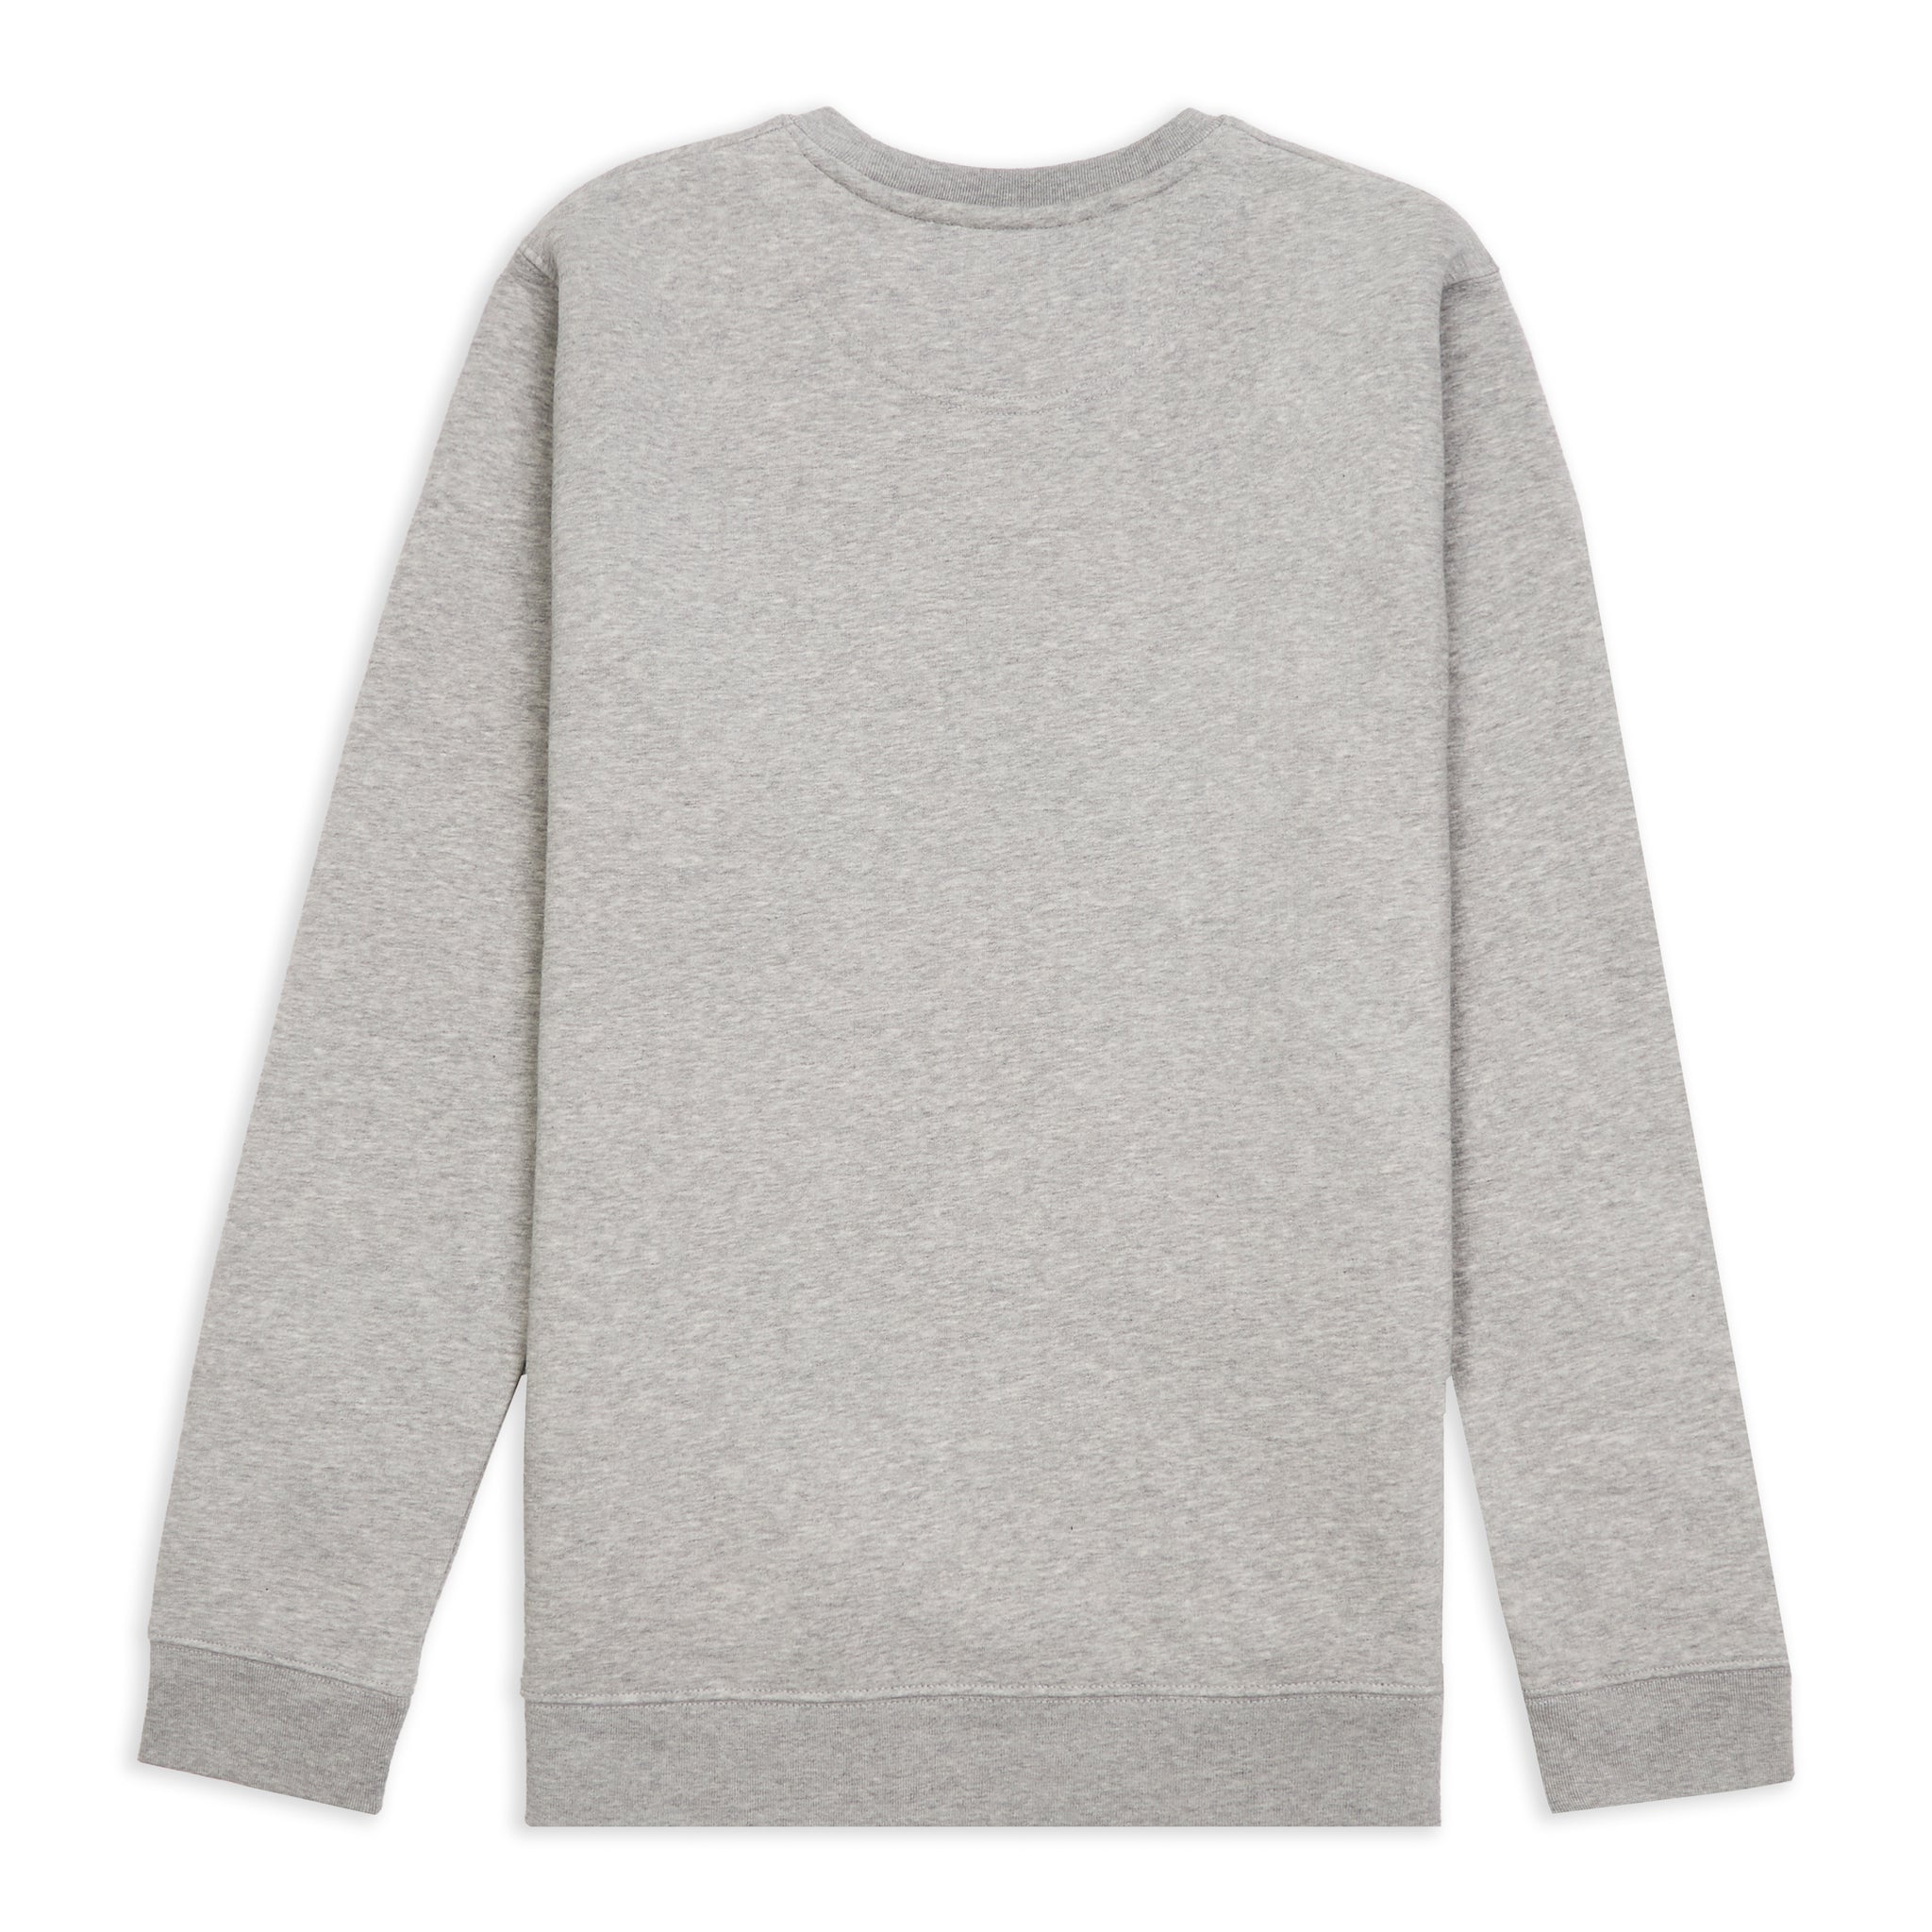 Grey 30 Year Clothing 30 Year™ Sweatshirt